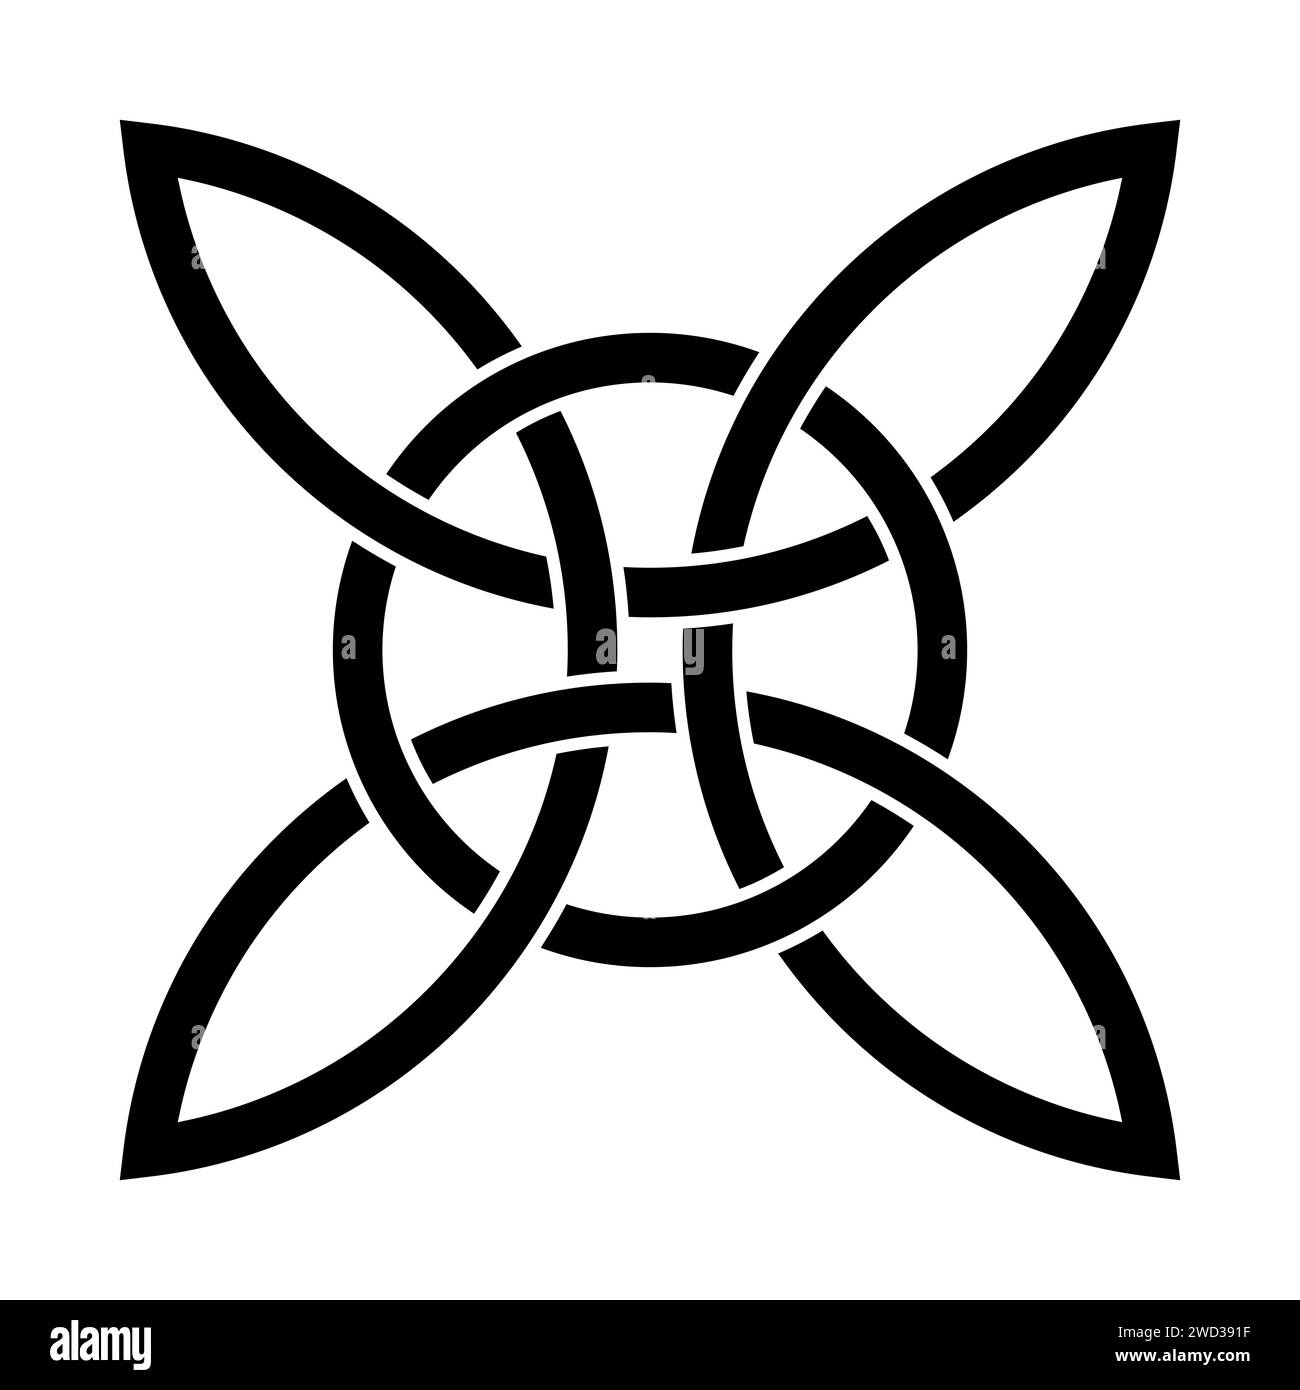 Keltischer Viererknoten mit verschachteltem Kreis. Das keltische Kreuz besteht aus vier endlos verbundenen Bögen, die mit einem Kreis verflochten sind. Spirituelles und religiöses Symbol. Stockfoto